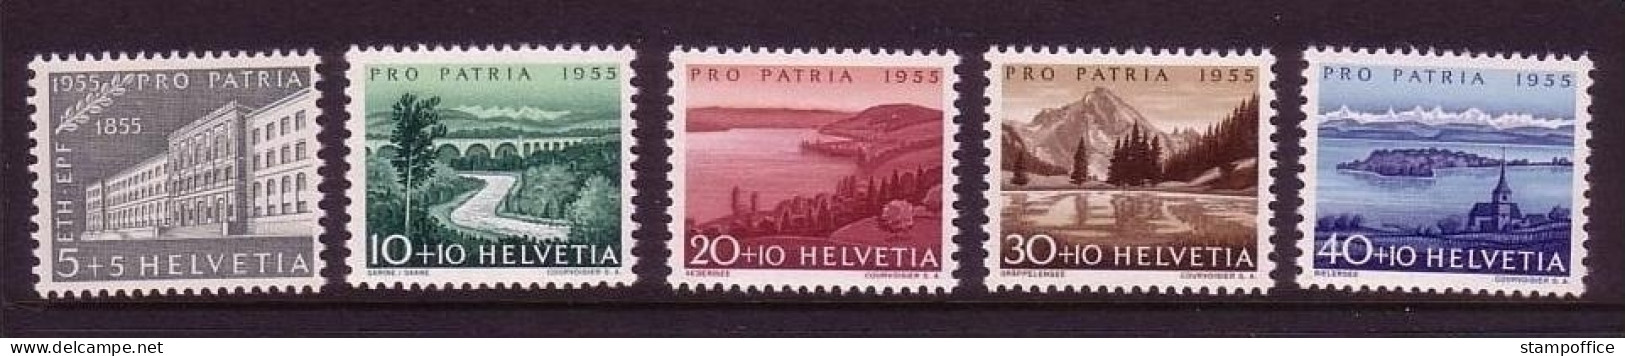 SCHWEIZ MI-NR. 613-617 POSTFRISCH(MINT) PRO PATRIA 1955 TECHNISCHE HOCHSCHULE ZÜRICH - Unused Stamps